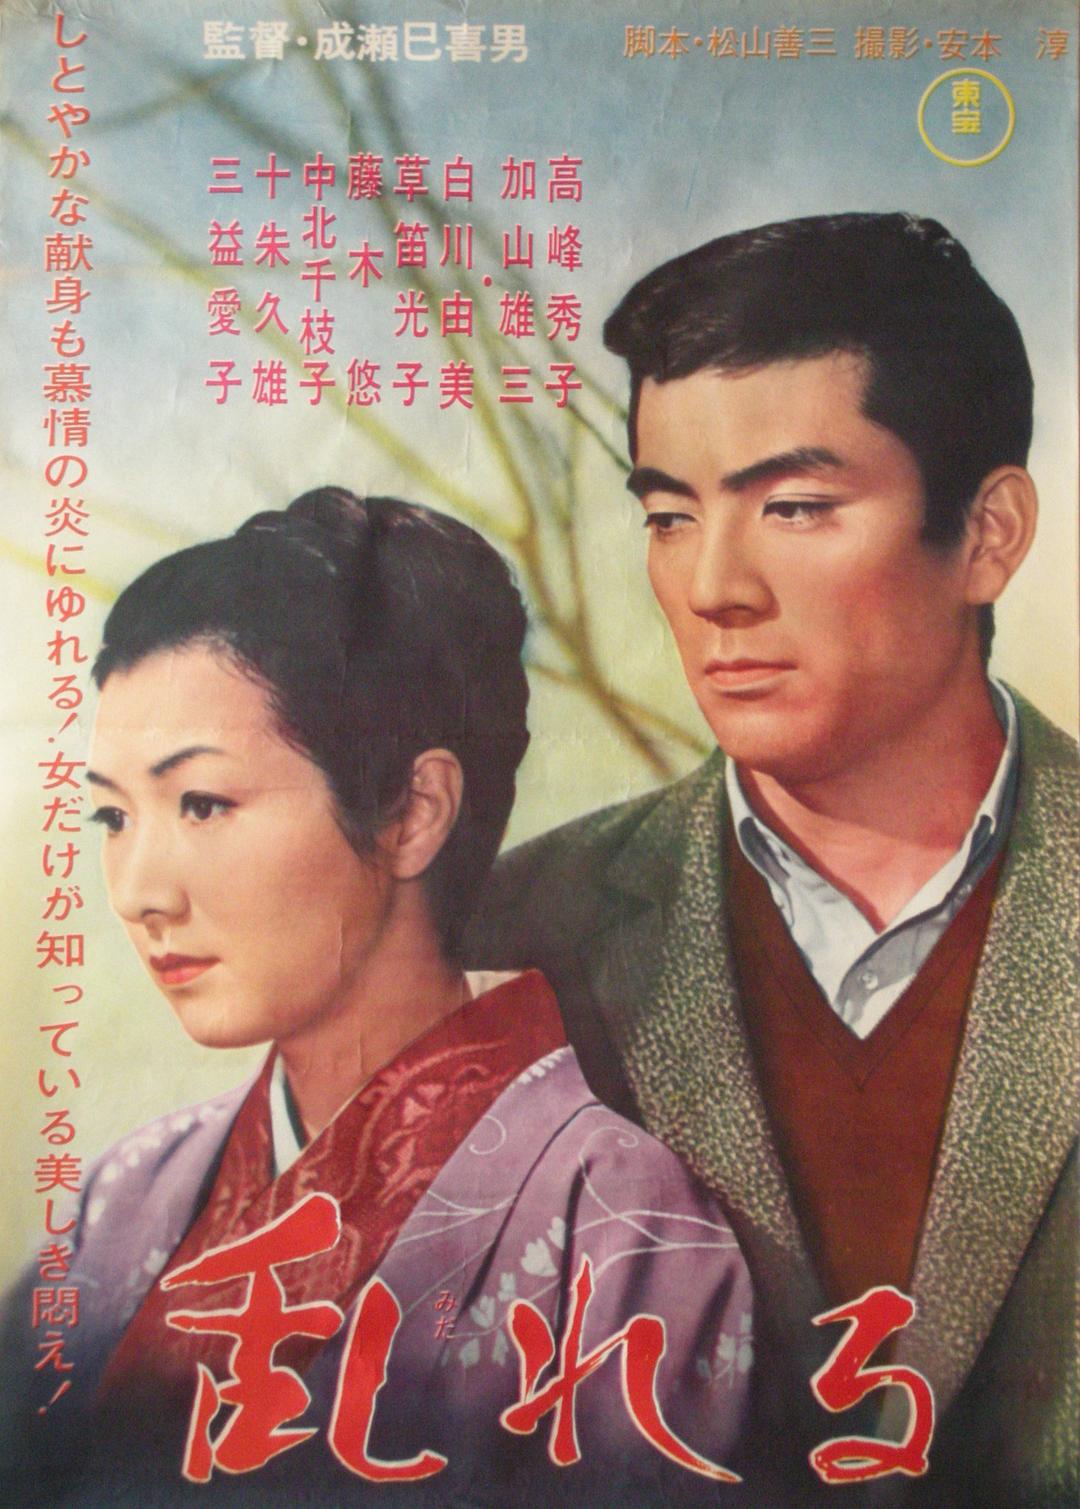 情迷意乱 Yearning.1964.JAPANESE.1080p.BluRay.x264.DTS-FGT 8.42GB-1.png